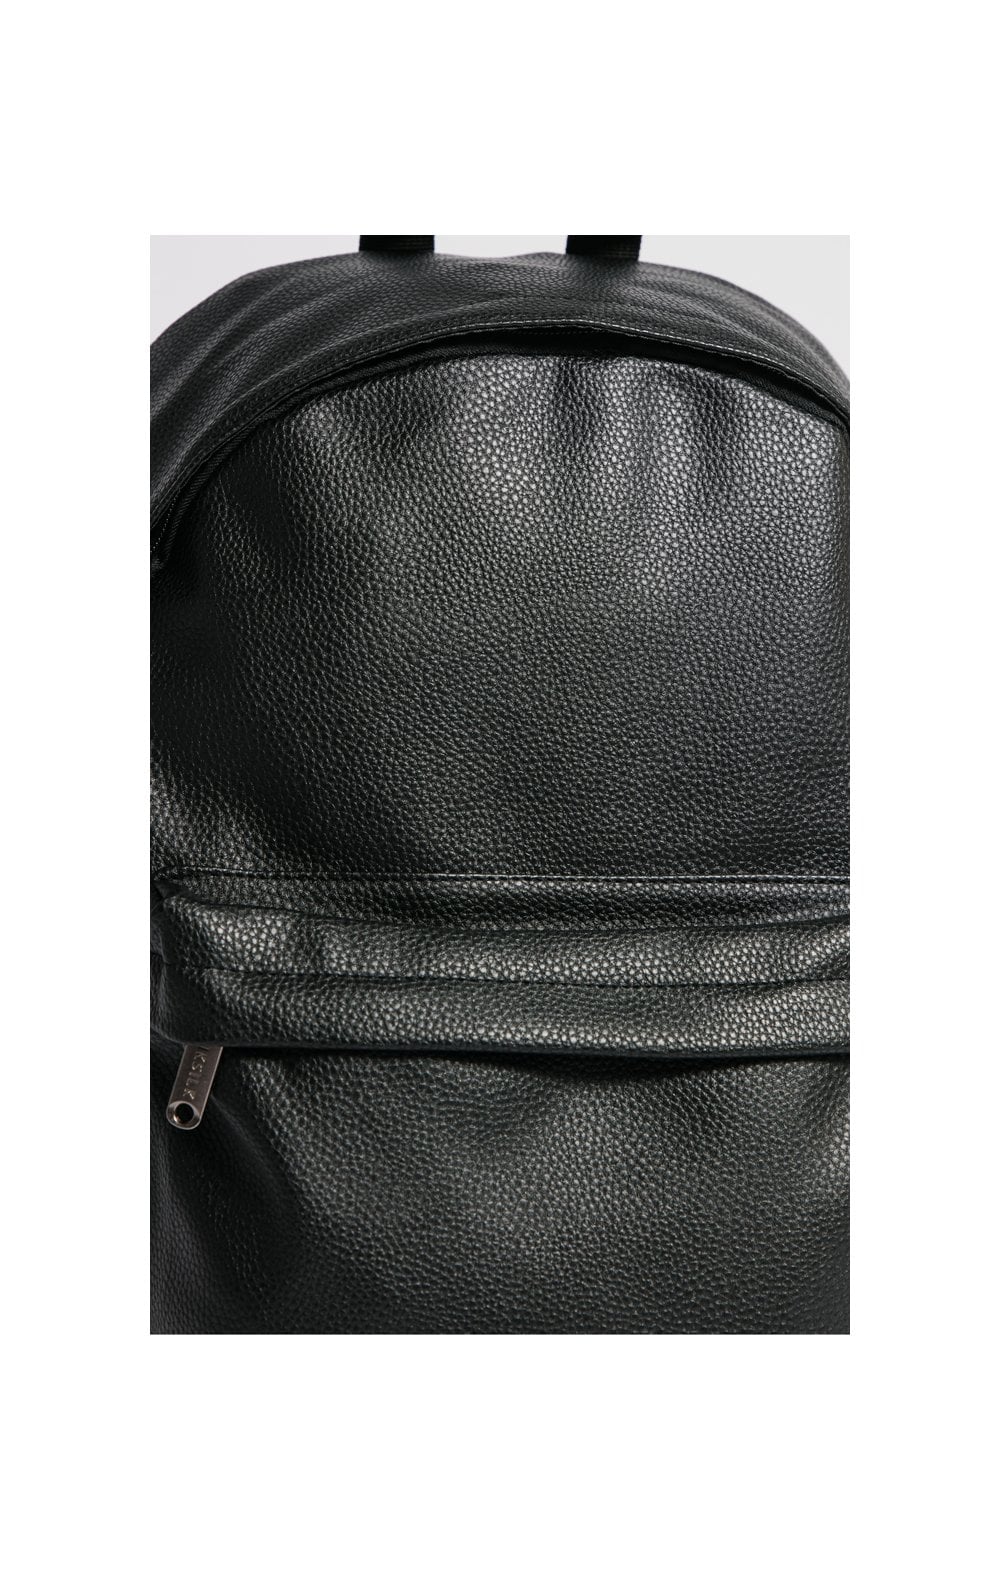 SikSilk Essential Backpack - Black (4)